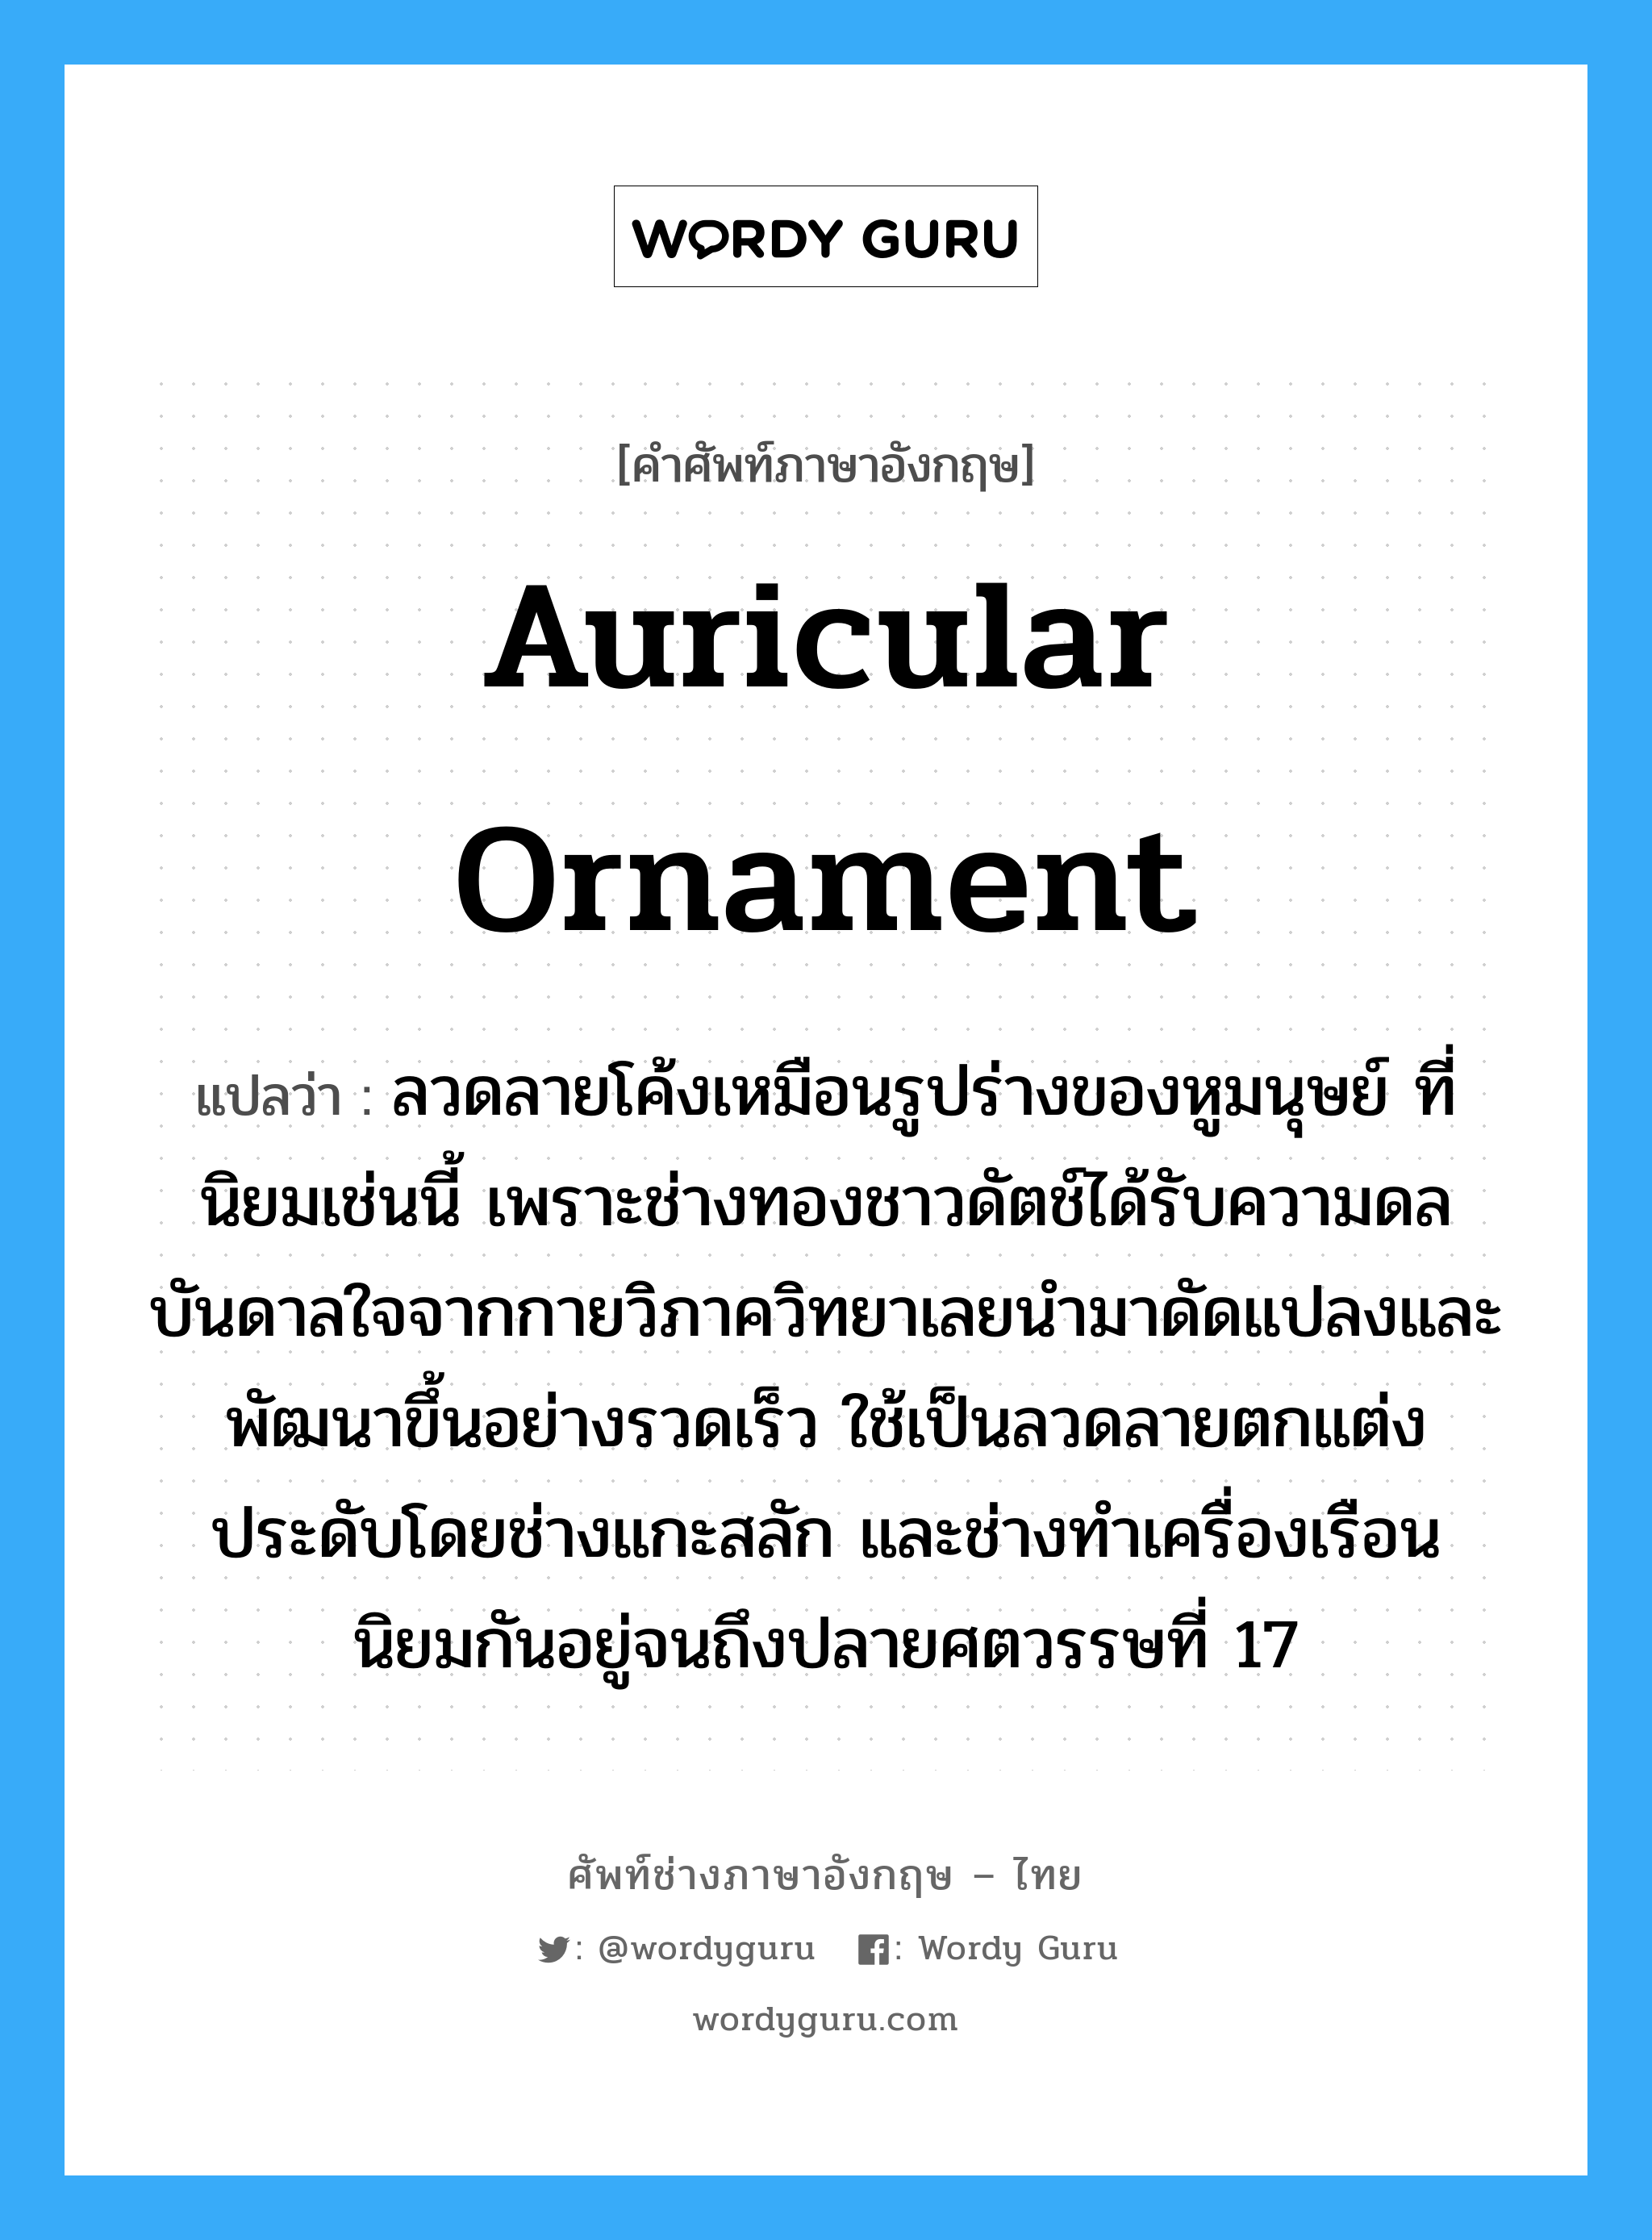 auricular ornament แปลว่า?, คำศัพท์ช่างภาษาอังกฤษ - ไทย auricular ornament คำศัพท์ภาษาอังกฤษ auricular ornament แปลว่า ลวดลายโค้งเหมือนรูปร่างของหูมนุษย์ ที่นิยมเช่นนี้ เพราะช่างทองชาวดัตช์ได้รับความดลบันดาลใจจากกายวิภาควิทยาเลยนำมาดัดแปลงและพัฒนาขึ้นอย่างรวดเร็ว ใช้เป็นลวดลายตกแต่งประดับโดยช่างแกะสลัก และช่างทำเครื่องเรือน นิยมกันอยู่จนถึงปลายศตวรรษที่ 17